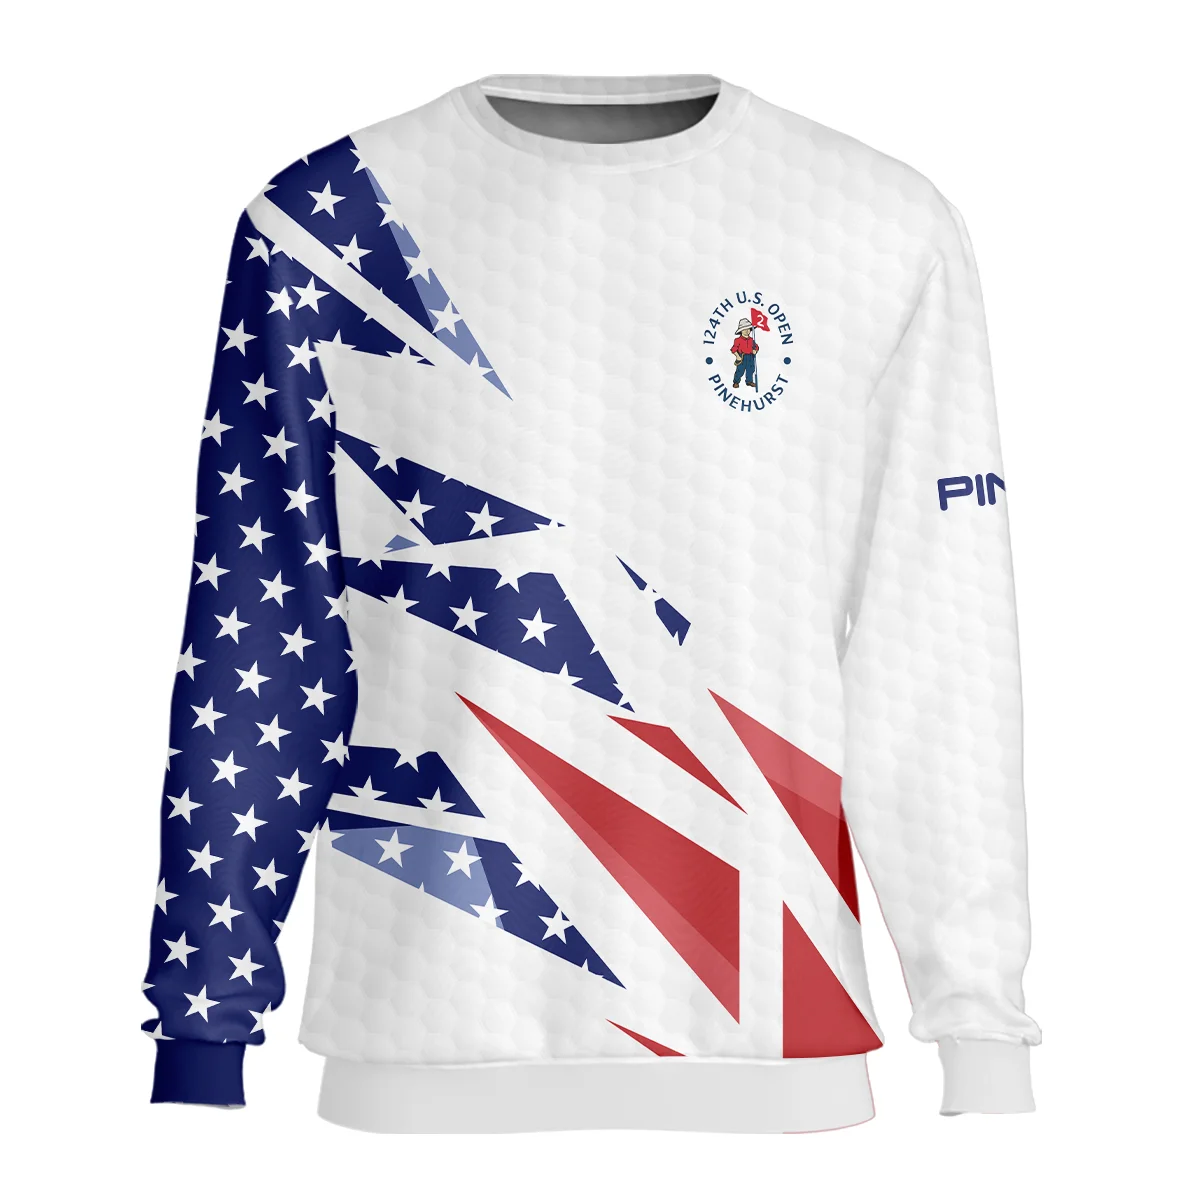 124th U.S. Open Pinehurst Ping Bomber Jacket Golf Pattern White USA Flag All Over Print Bomber Jacket